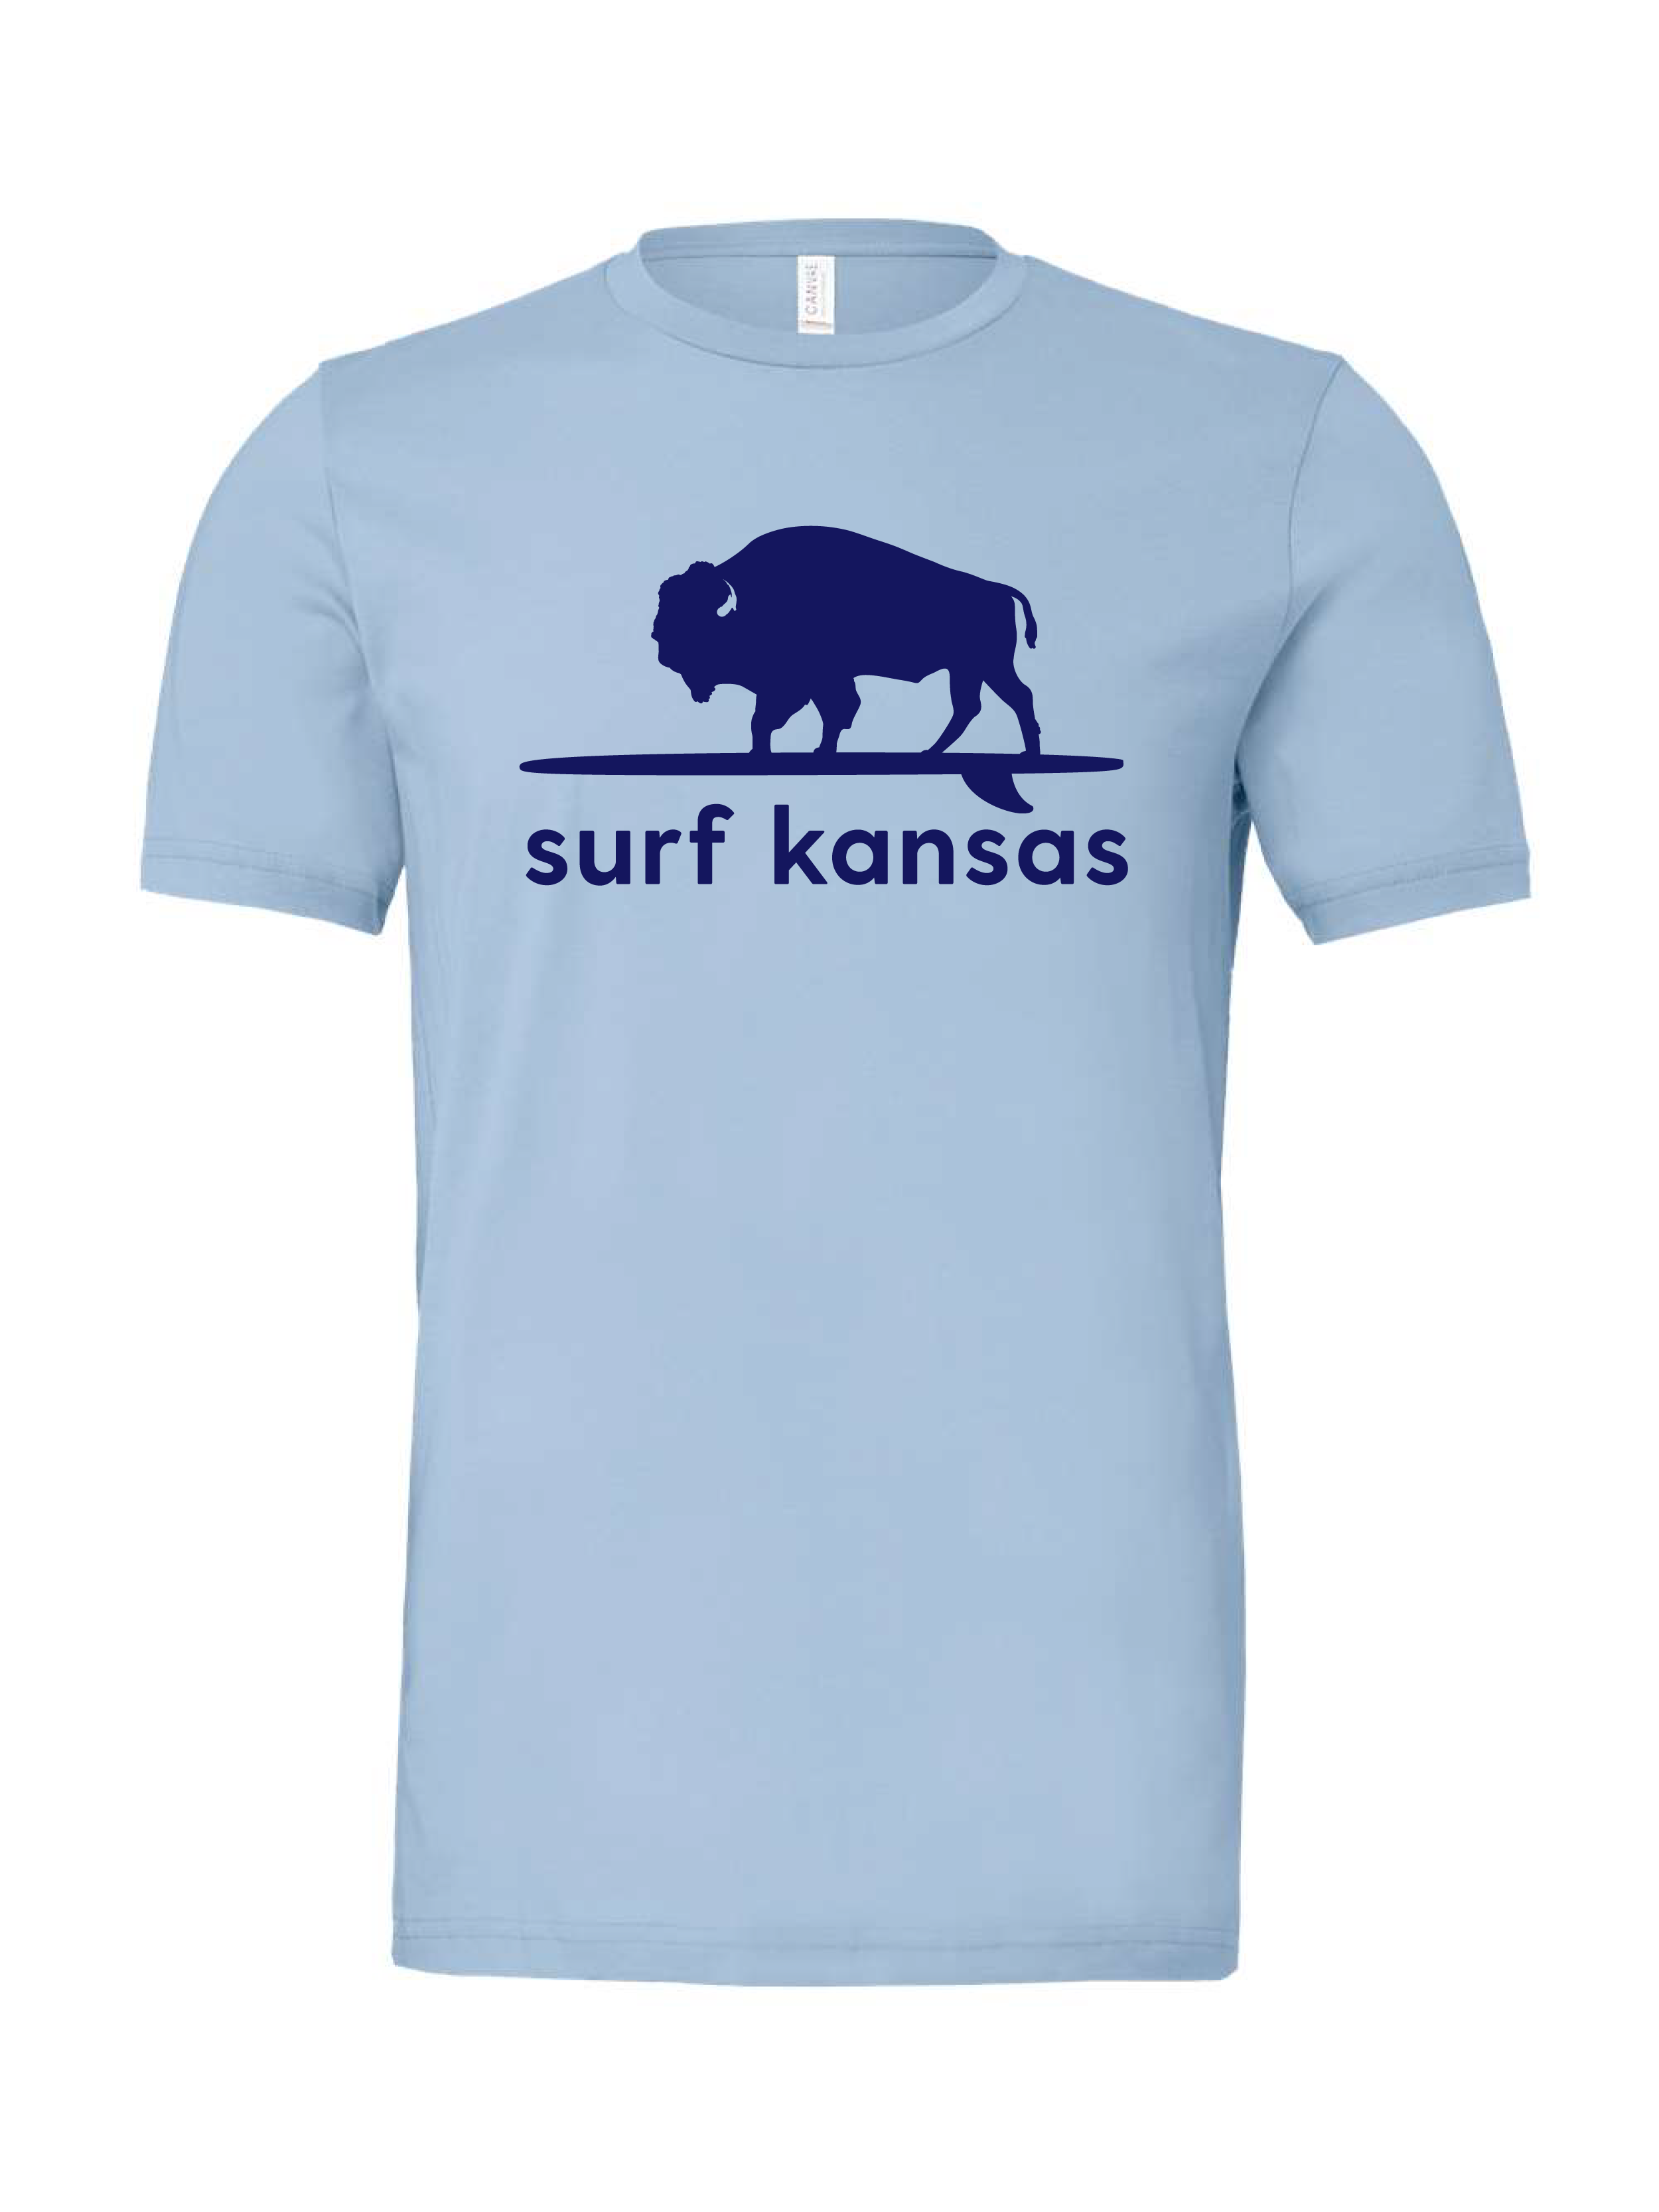 Surf Kansas